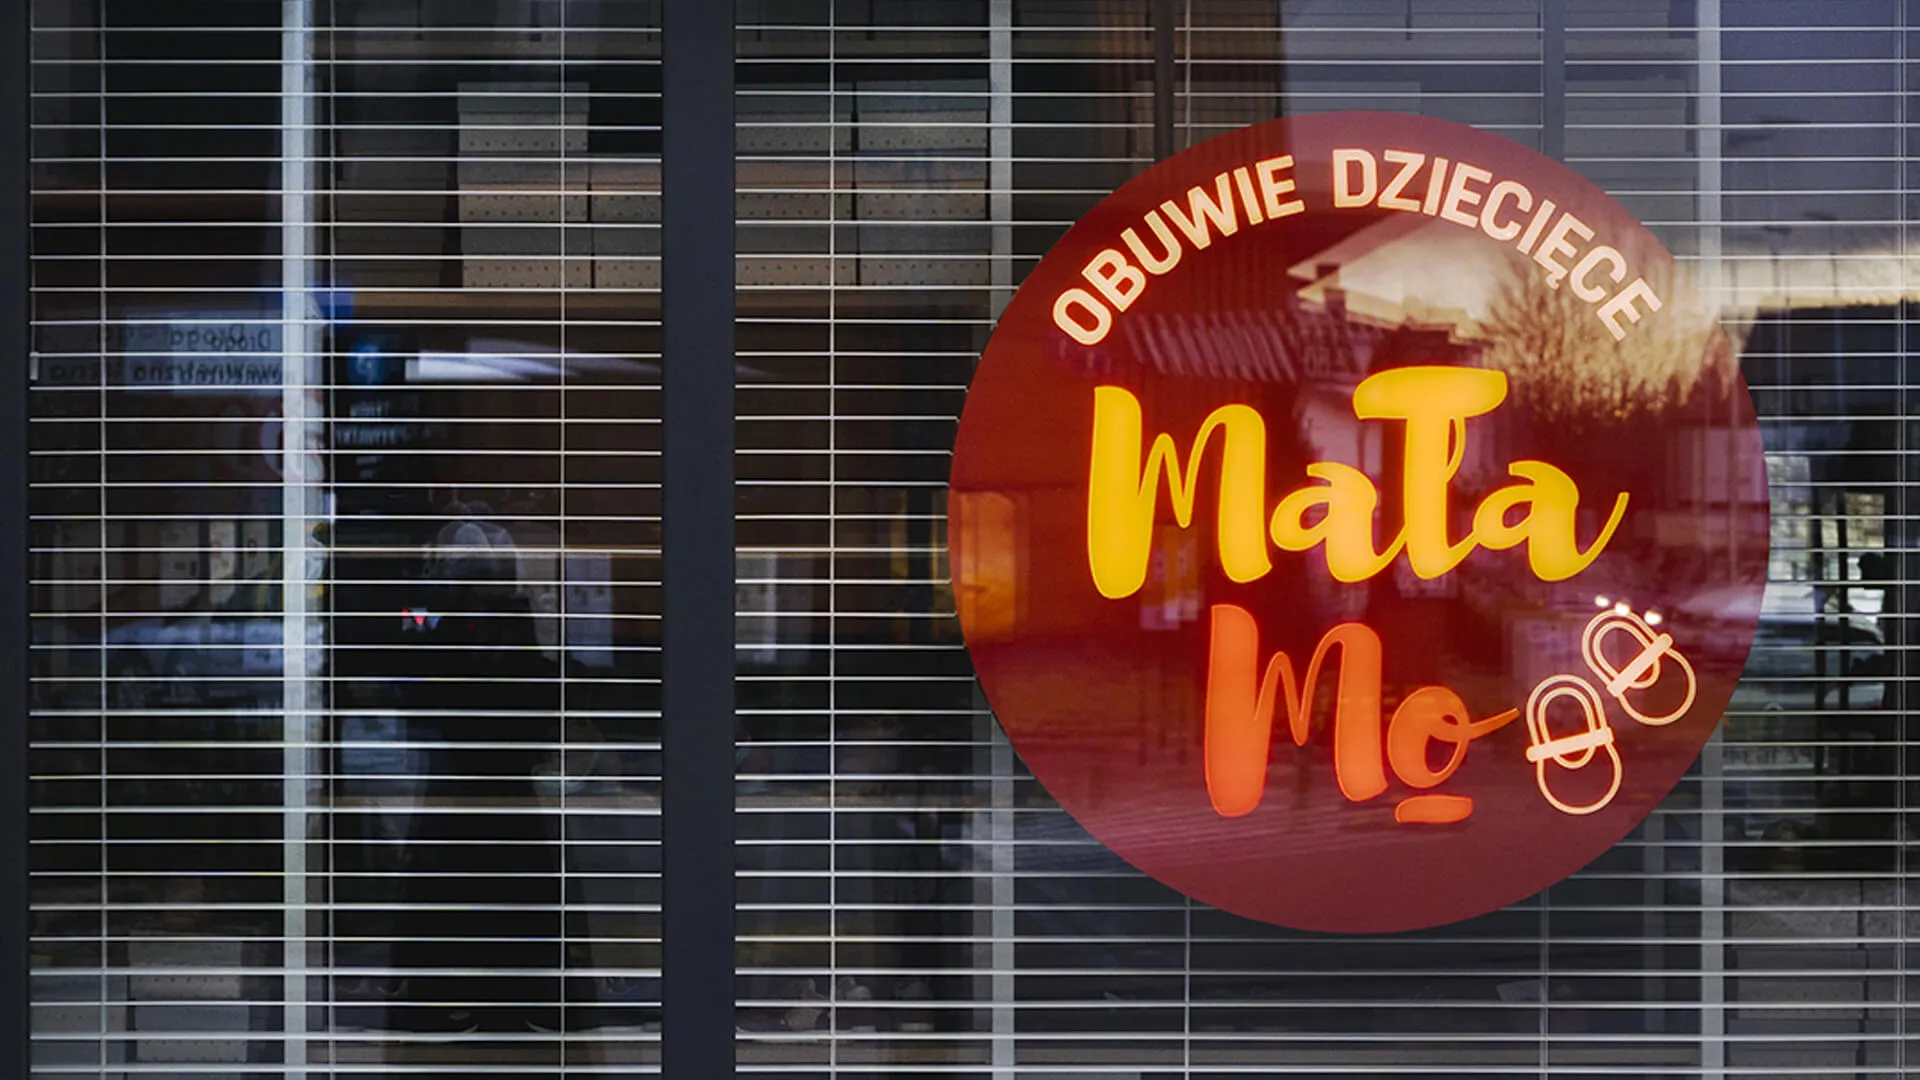 Kleiner Mo - Laden beleuchtete Schatulle, hinter Glas in Gelb und Rot.